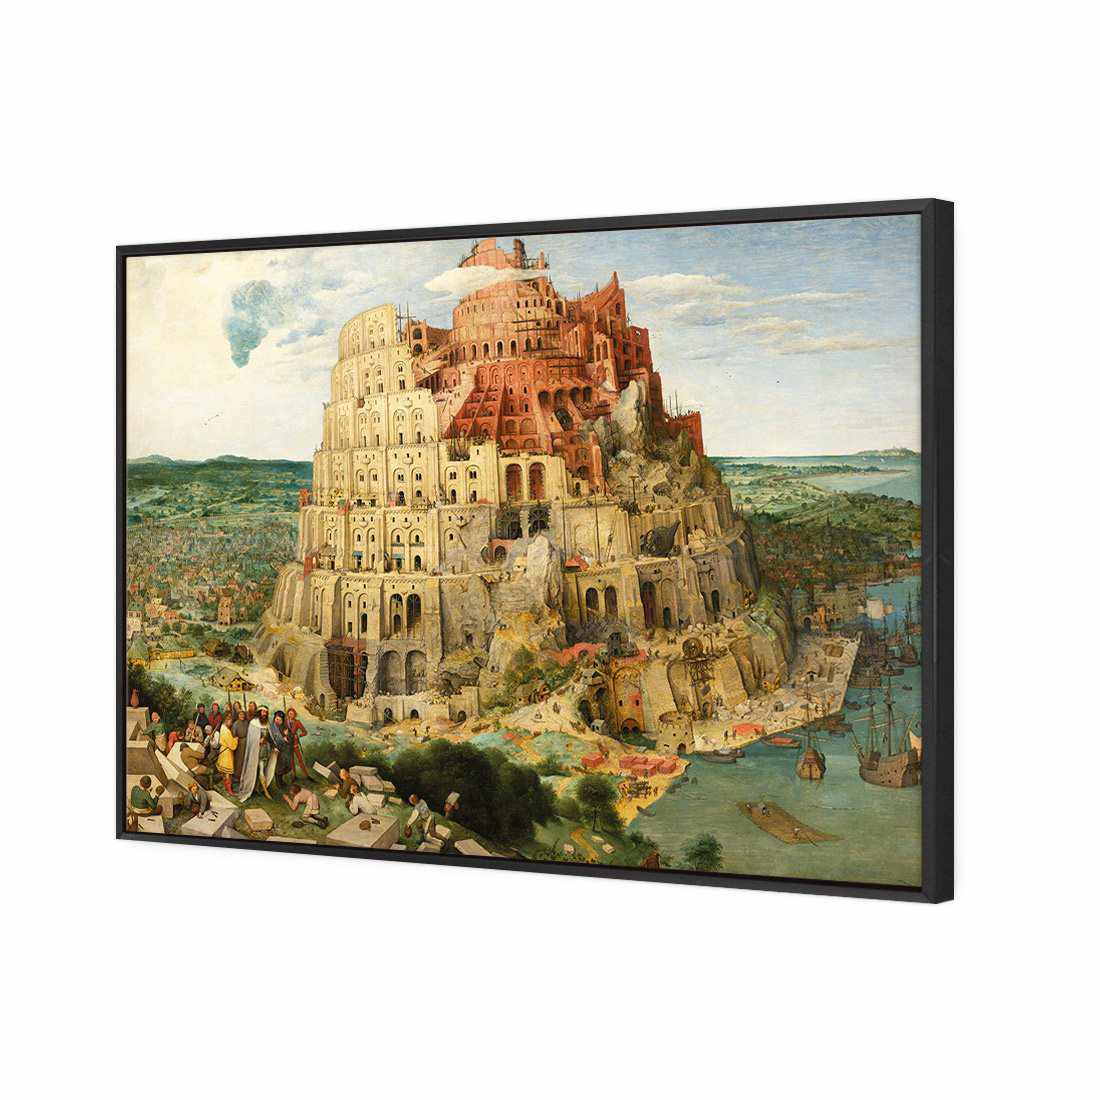 Tower Of Babel - Pieter Bruegel The Elder Canvas Art-Canvas-Wall Art Designs-45x30cm-Canvas - Black Frame-Wall Art Designs